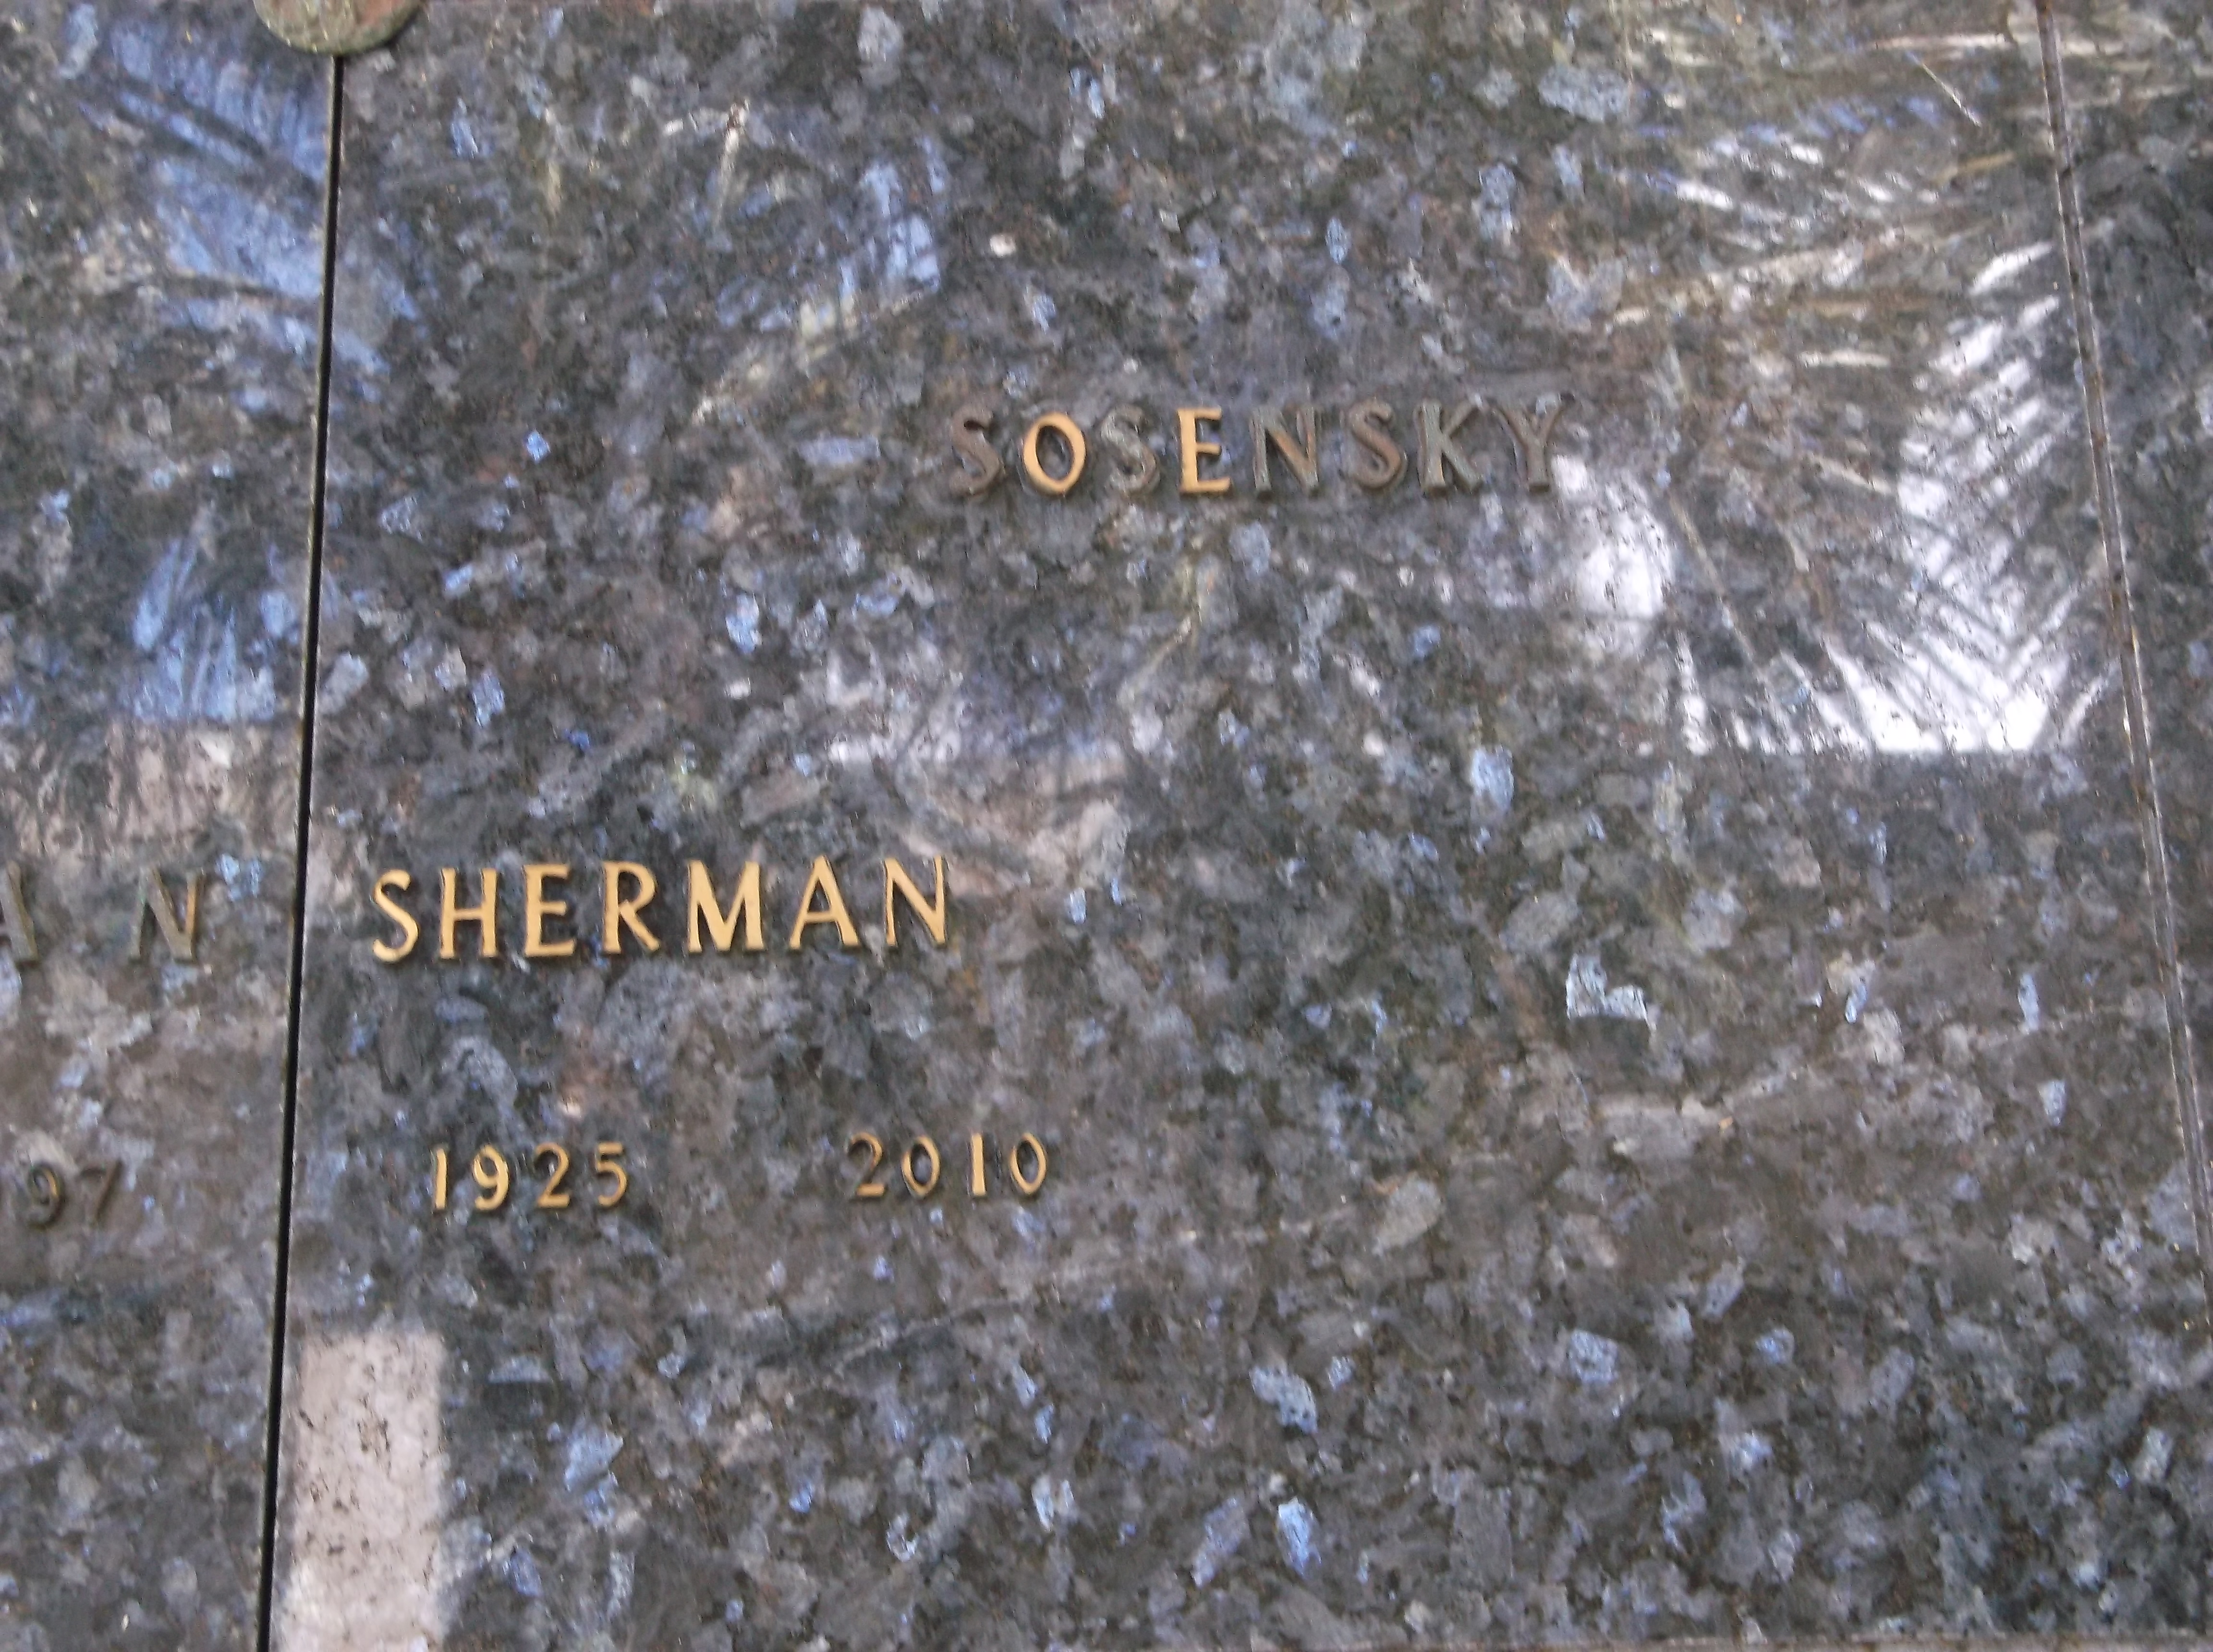 Sherman Sosensky